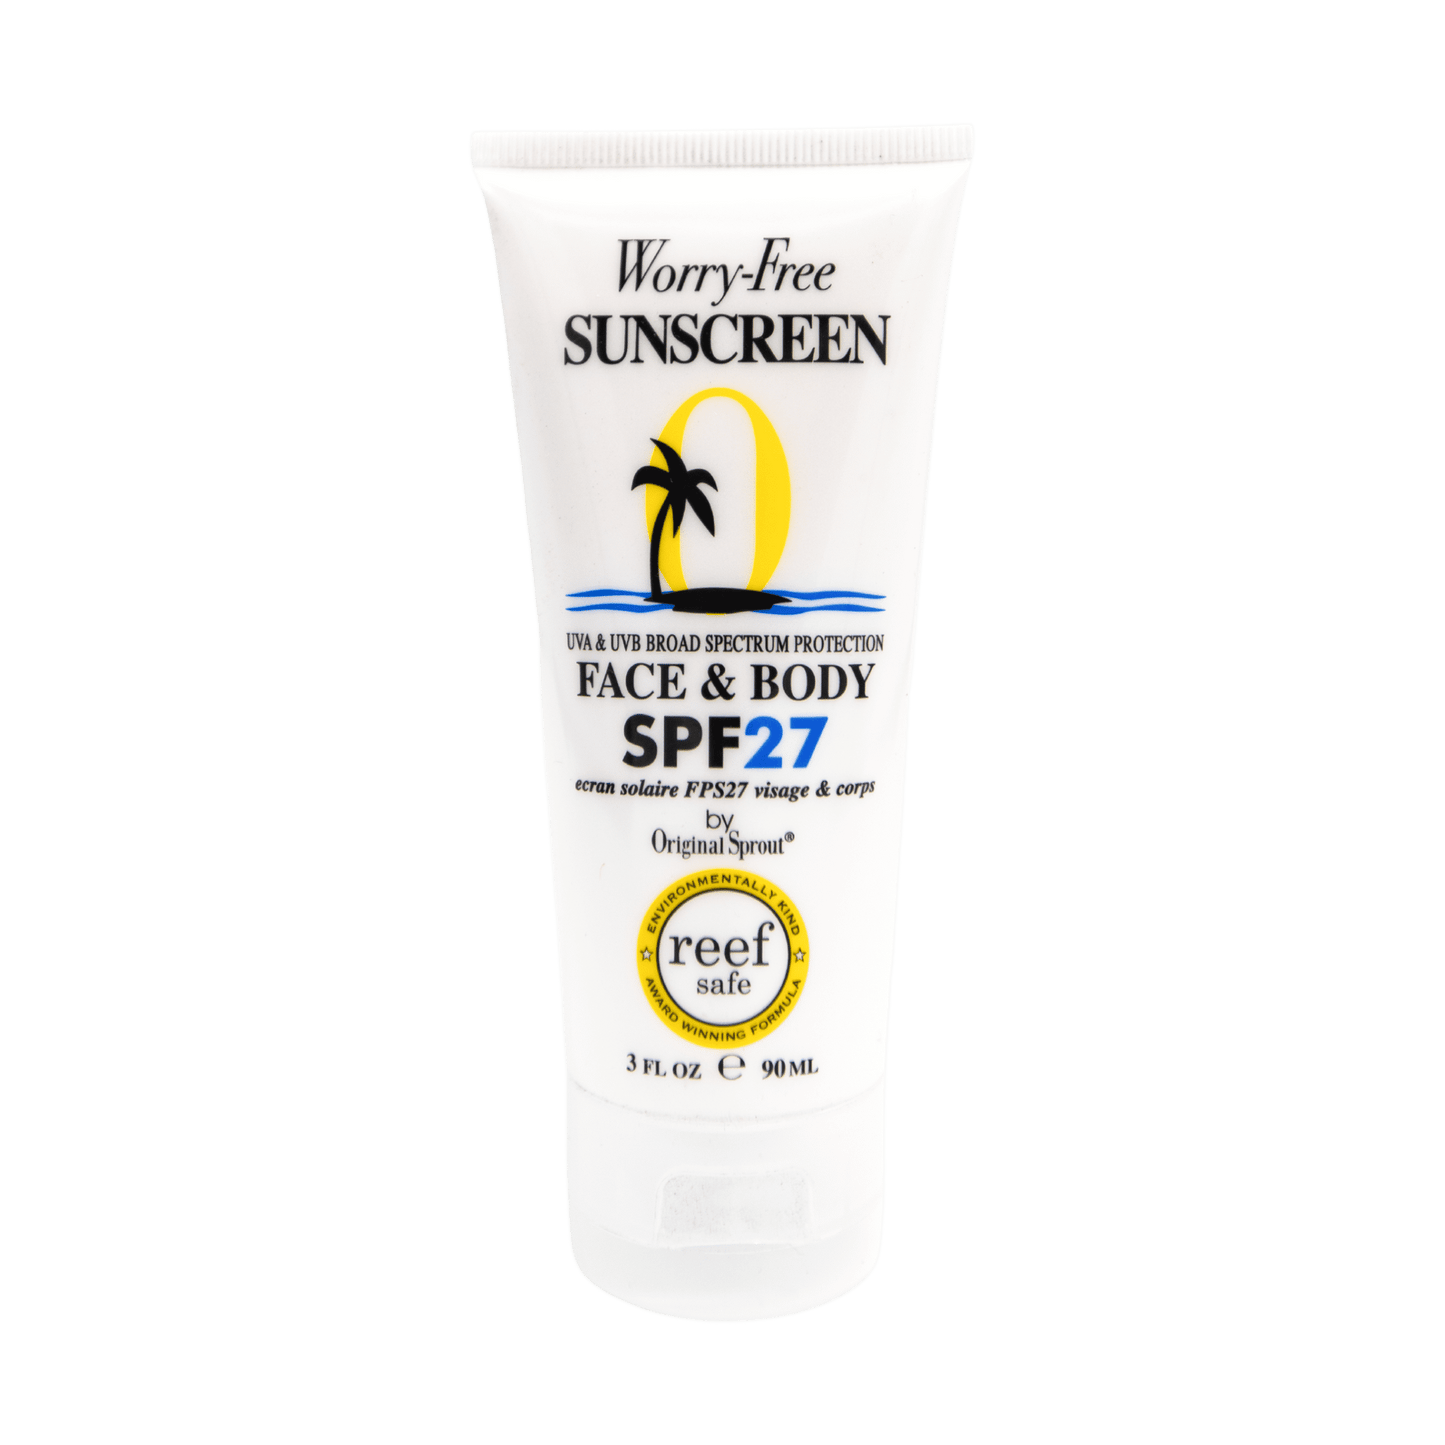 Original Sprout Face & Body Sunscreen (SPF 27) 3oz